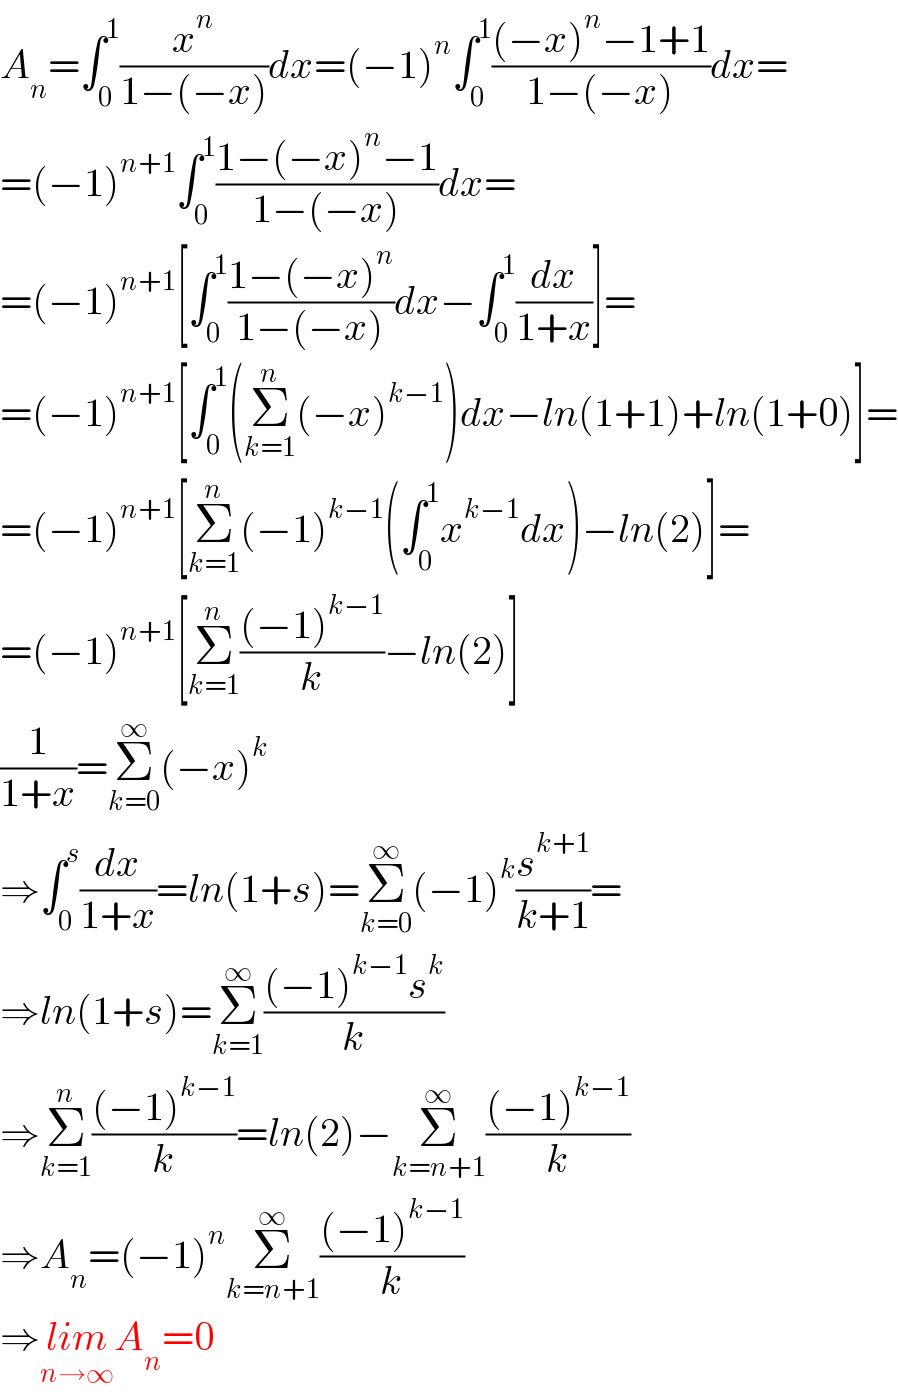 A_n =∫_0 ^1 (x^n /(1−(−x)))dx=(−1)^n ∫_0 ^1 (((−x)^n −1+1)/(1−(−x)))dx=  =(−1)^(n+1) ∫_0 ^1 ((1−(−x)^n −1)/(1−(−x)))dx=  =(−1)^(n+1) [∫_0 ^1 ((1−(−x)^n )/(1−(−x)))dx−∫_0 ^1 (dx/(1+x))]=  =(−1)^(n+1) [∫_0 ^1 (Σ_(k=1) ^n (−x)^(k−1) )dx−ln(1+1)+ln(1+0)]=  =(−1)^(n+1) [Σ_(k=1) ^n (−1)^(k−1) (∫_0 ^1 x^(k−1) dx)−ln(2)]=  =(−1)^(n+1) [Σ_(k=1) ^n (((−1)^(k−1) )/k)−ln(2)]  (1/(1+x))=Σ_(k=0) ^∞ (−x)^k   ⇒∫_0 ^s (dx/(1+x))=ln(1+s)=Σ_(k=0) ^∞ (−1)^k (s^(k+1) /(k+1))=  ⇒ln(1+s)=Σ_(k=1) ^∞ (((−1)^(k−1) s^k )/k)  ⇒Σ_(k=1) ^n (((−1)^(k−1) )/k)=ln(2)−Σ_(k=n+1) ^∞ (((−1)^(k−1) )/k)  ⇒A_n =(−1)^n Σ_(k=n+1) ^∞ (((−1)^(k−1) )/k)  ⇒lim_(n→∞) A_n =0  